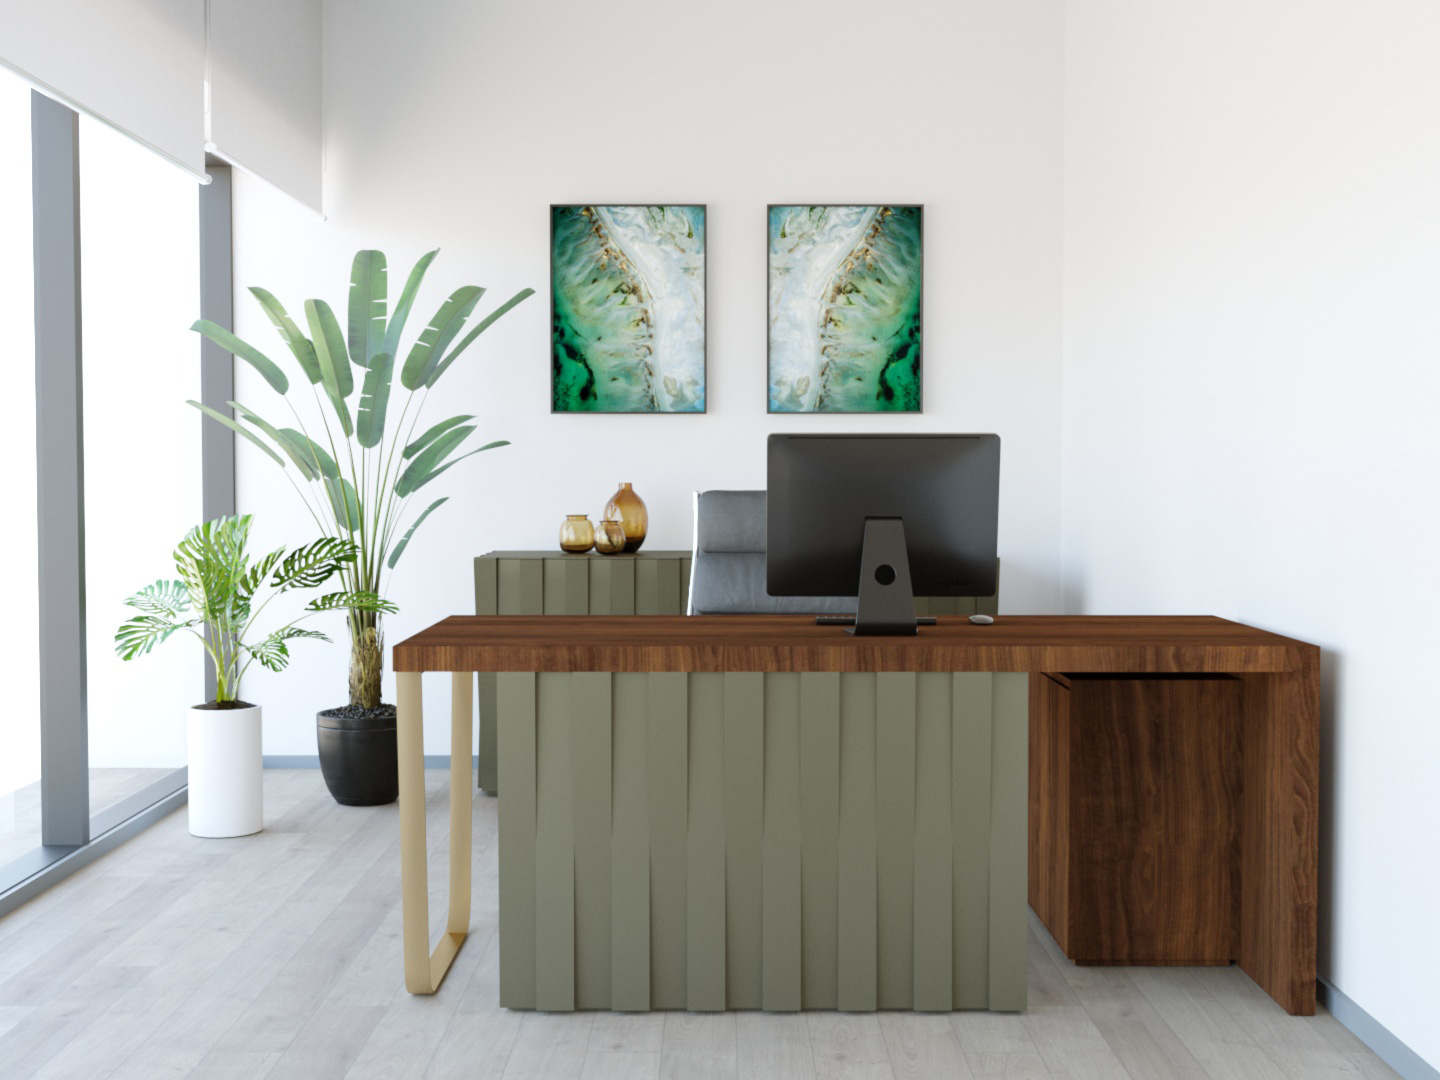 Description de l’image: Home office inspire de la nature, idéal pour télétravail. Avec les tons de vert et plantes naturelles.